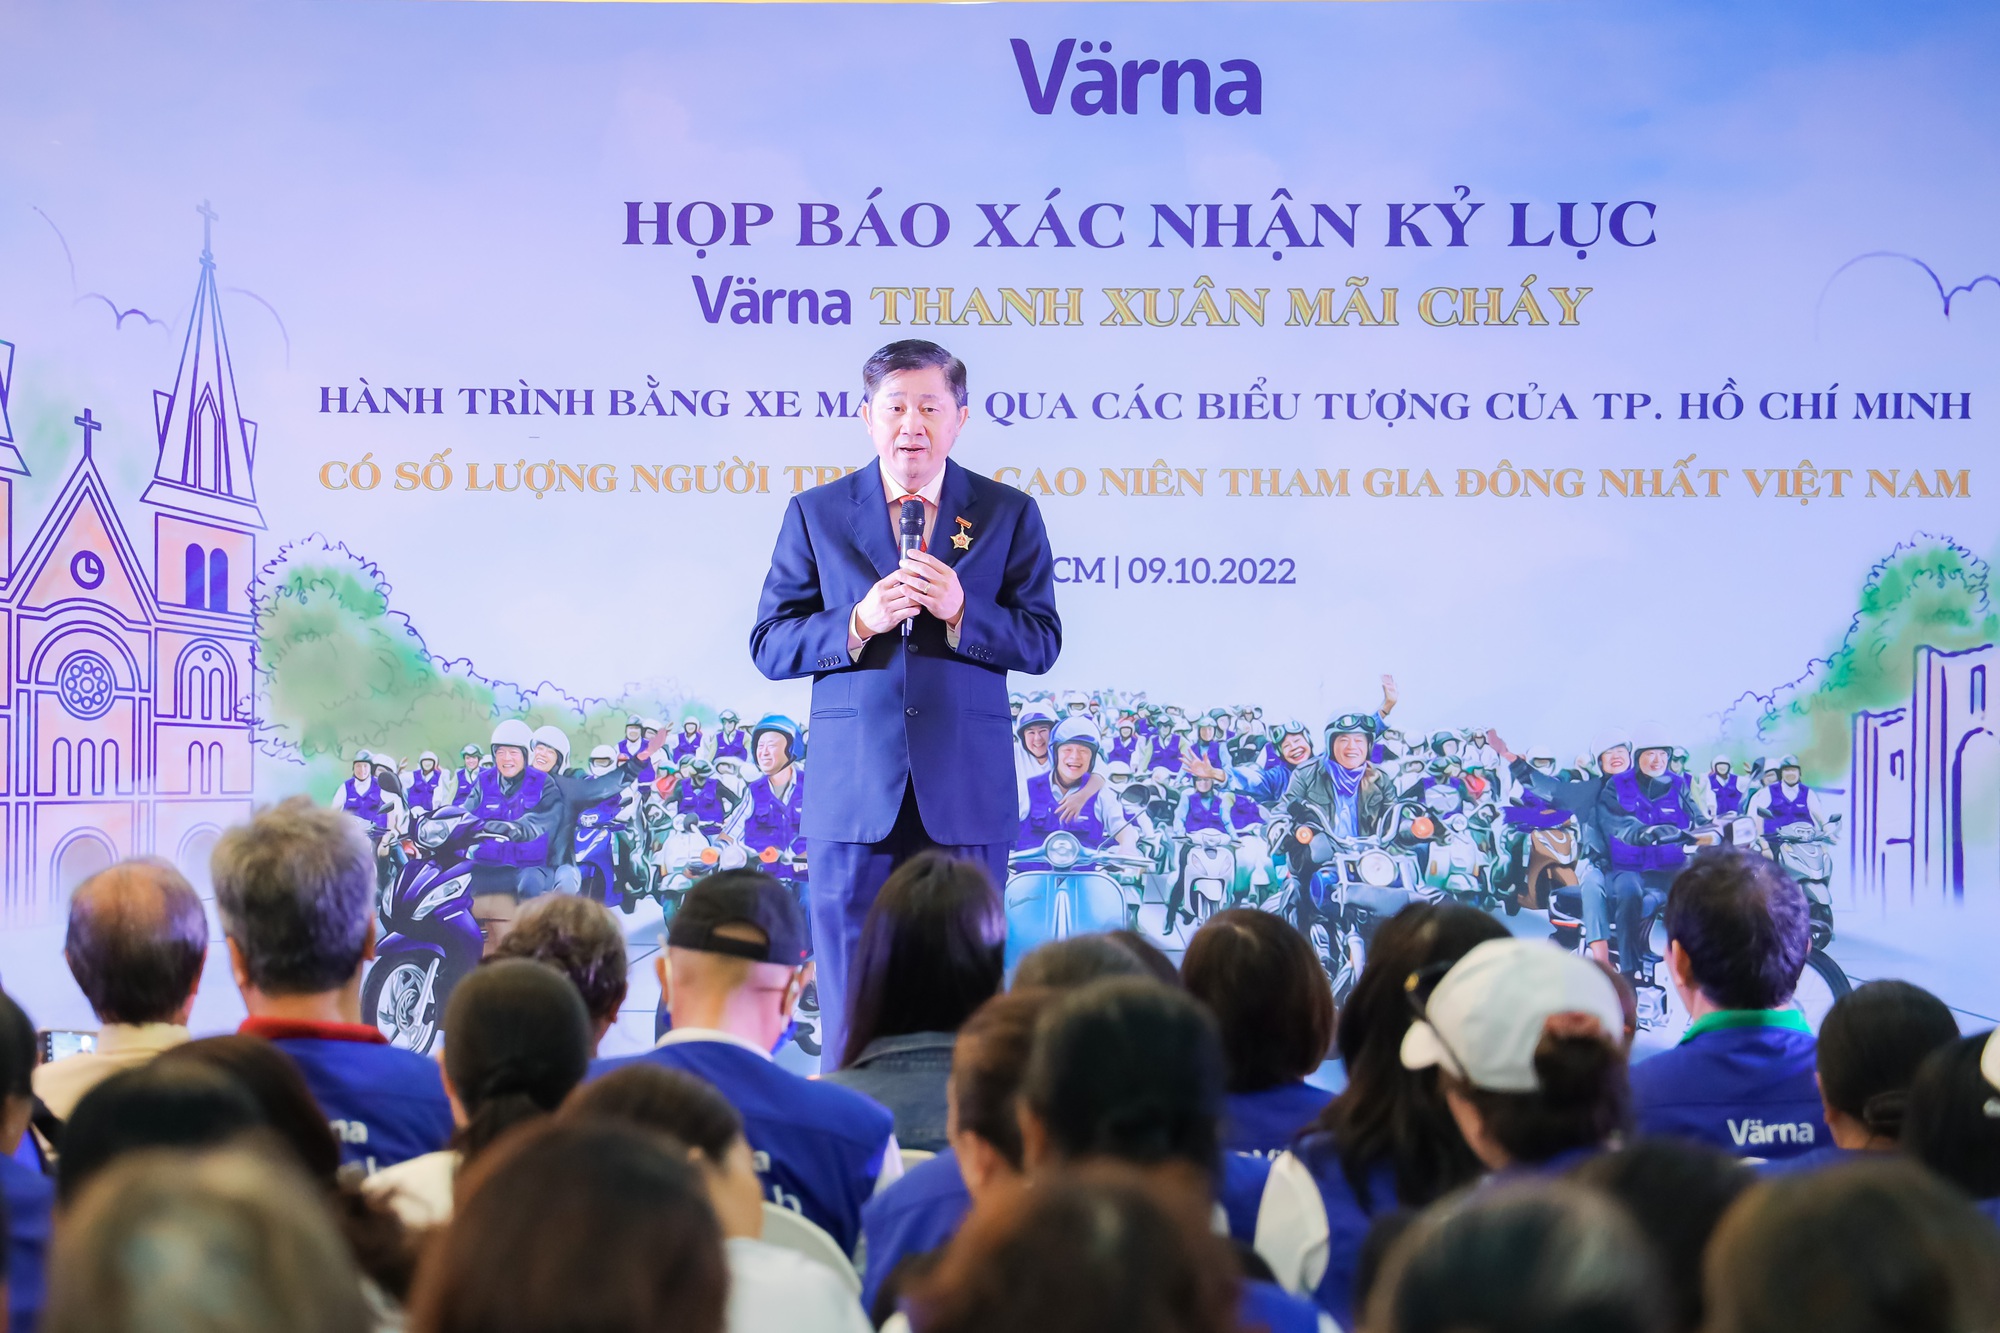 Värna: Nhãn hàng cung cấp giải pháp dinh dưỡng toàn diện cho người trưởng thành Việt  - Ảnh 6.